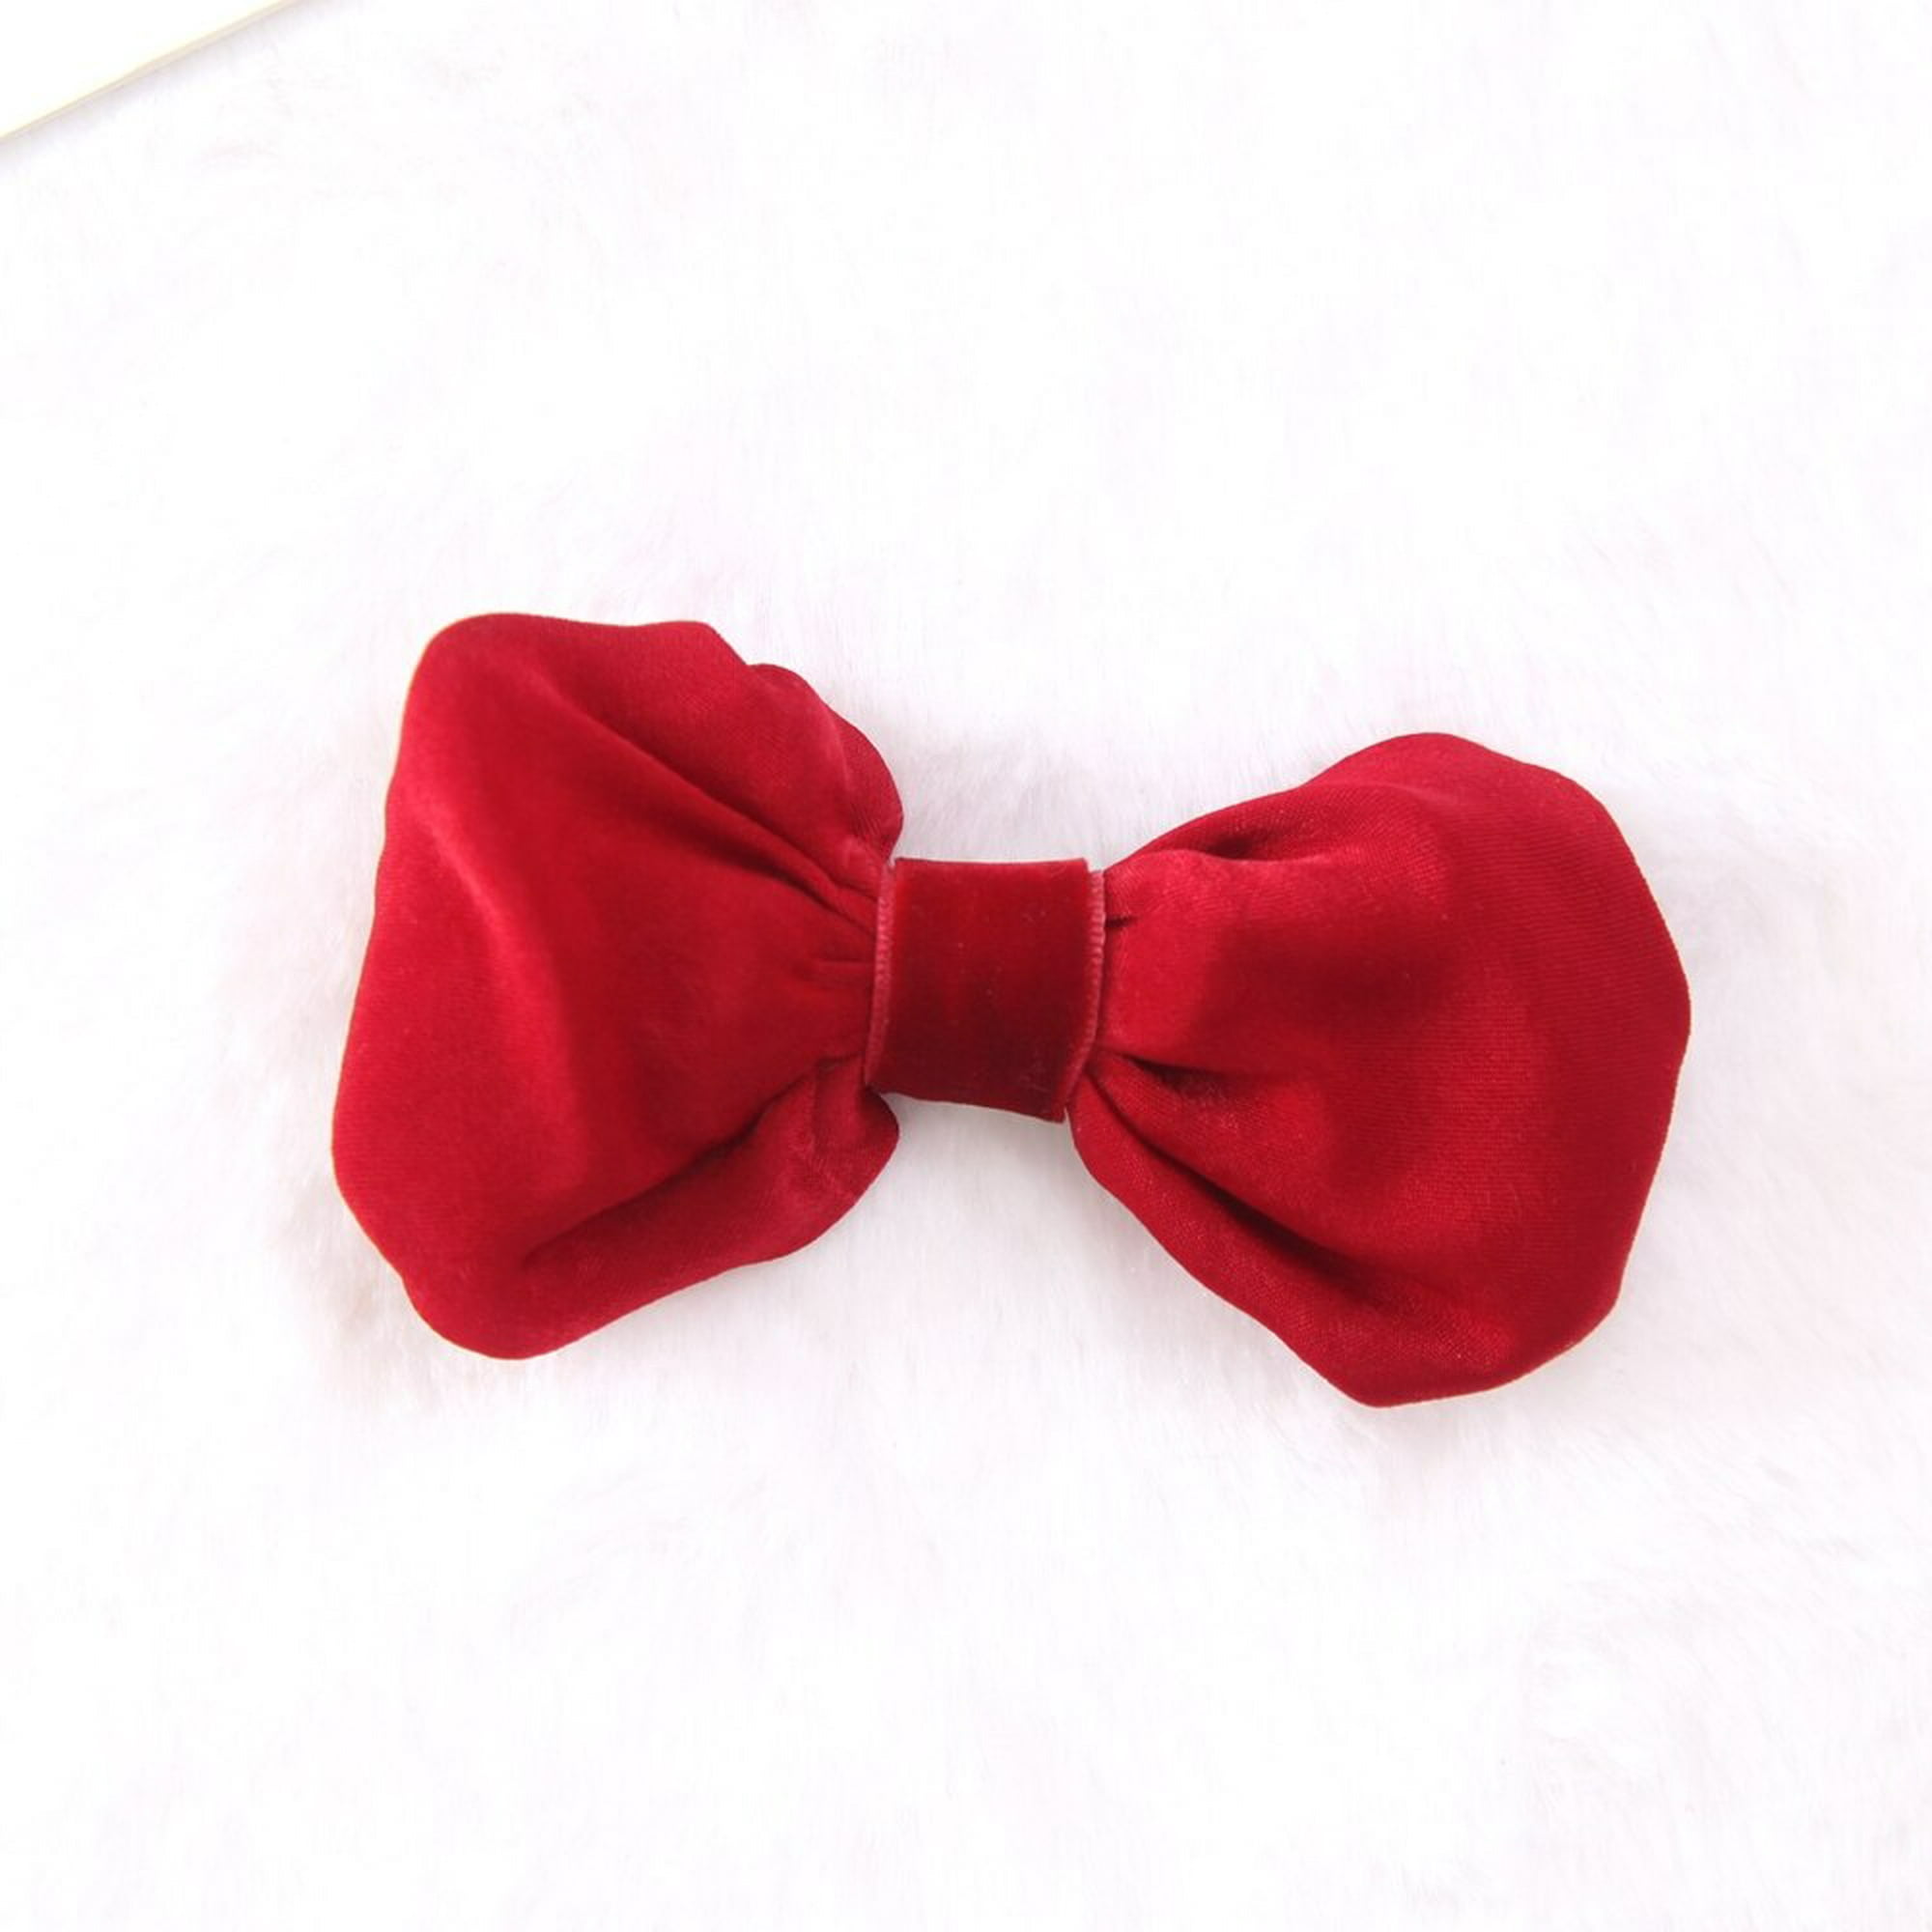 Oversized Red Velvet Bow Tie